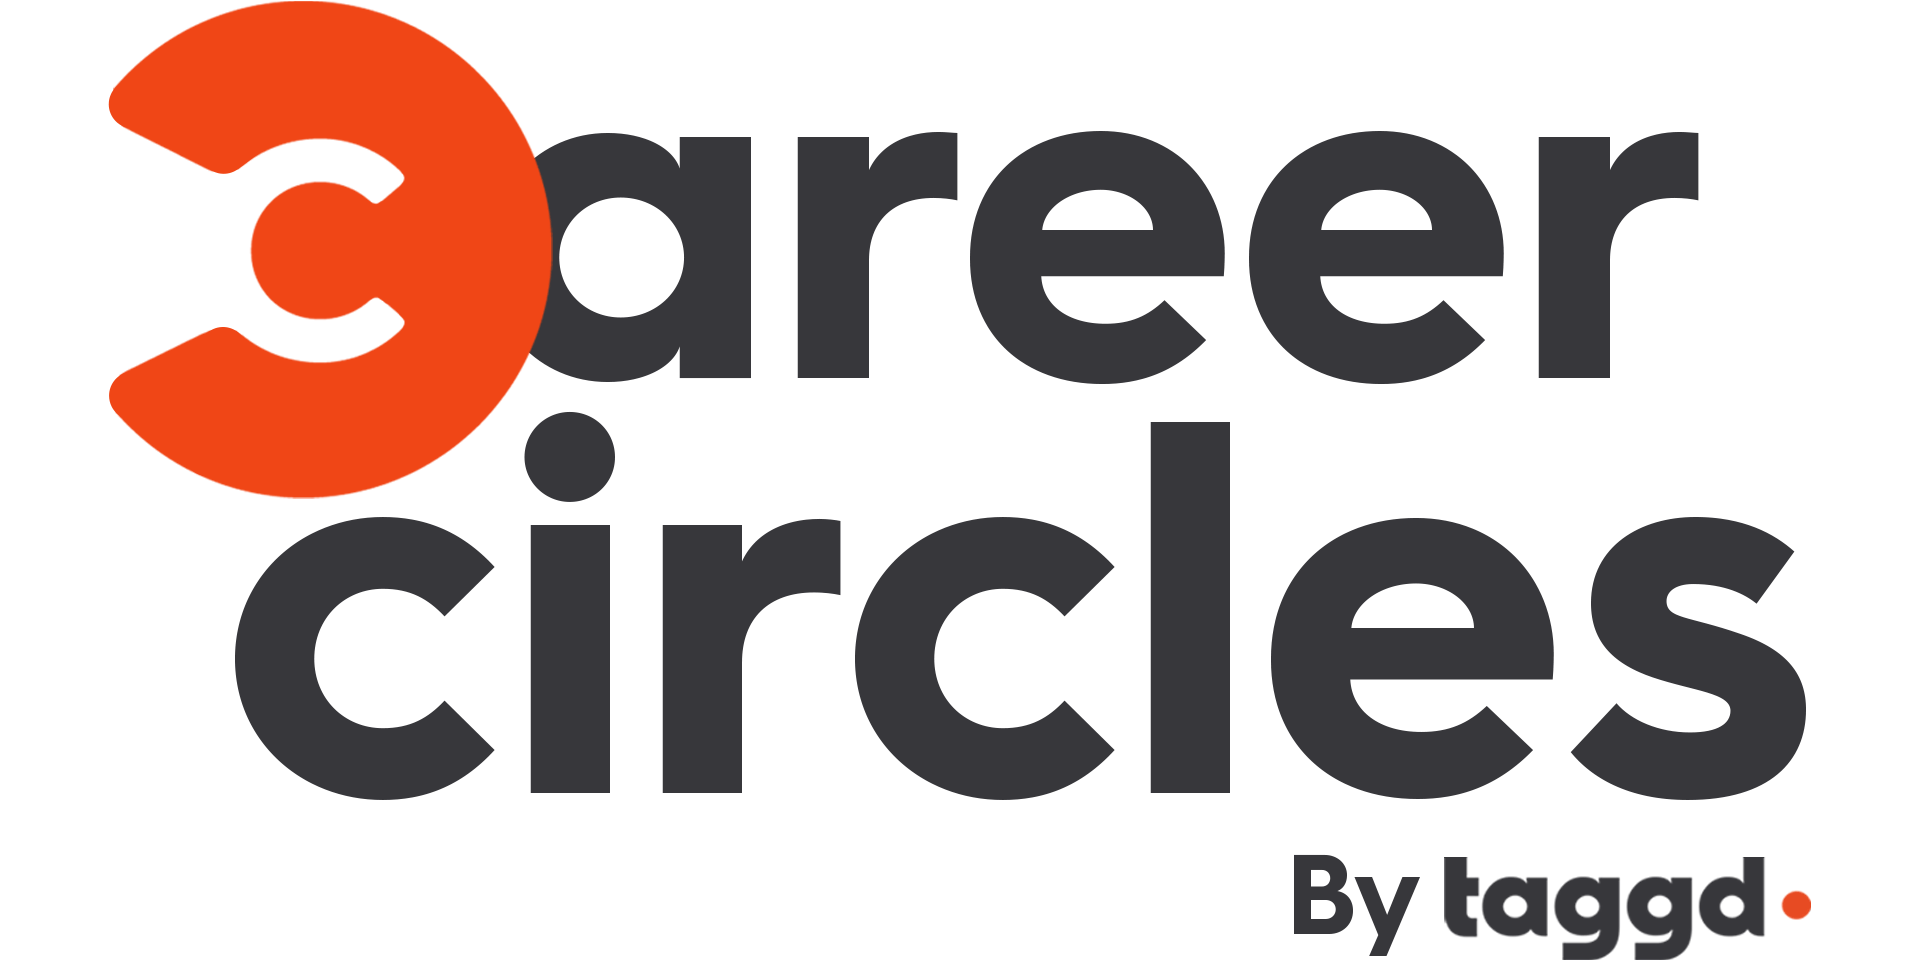 Taggd Career Circles